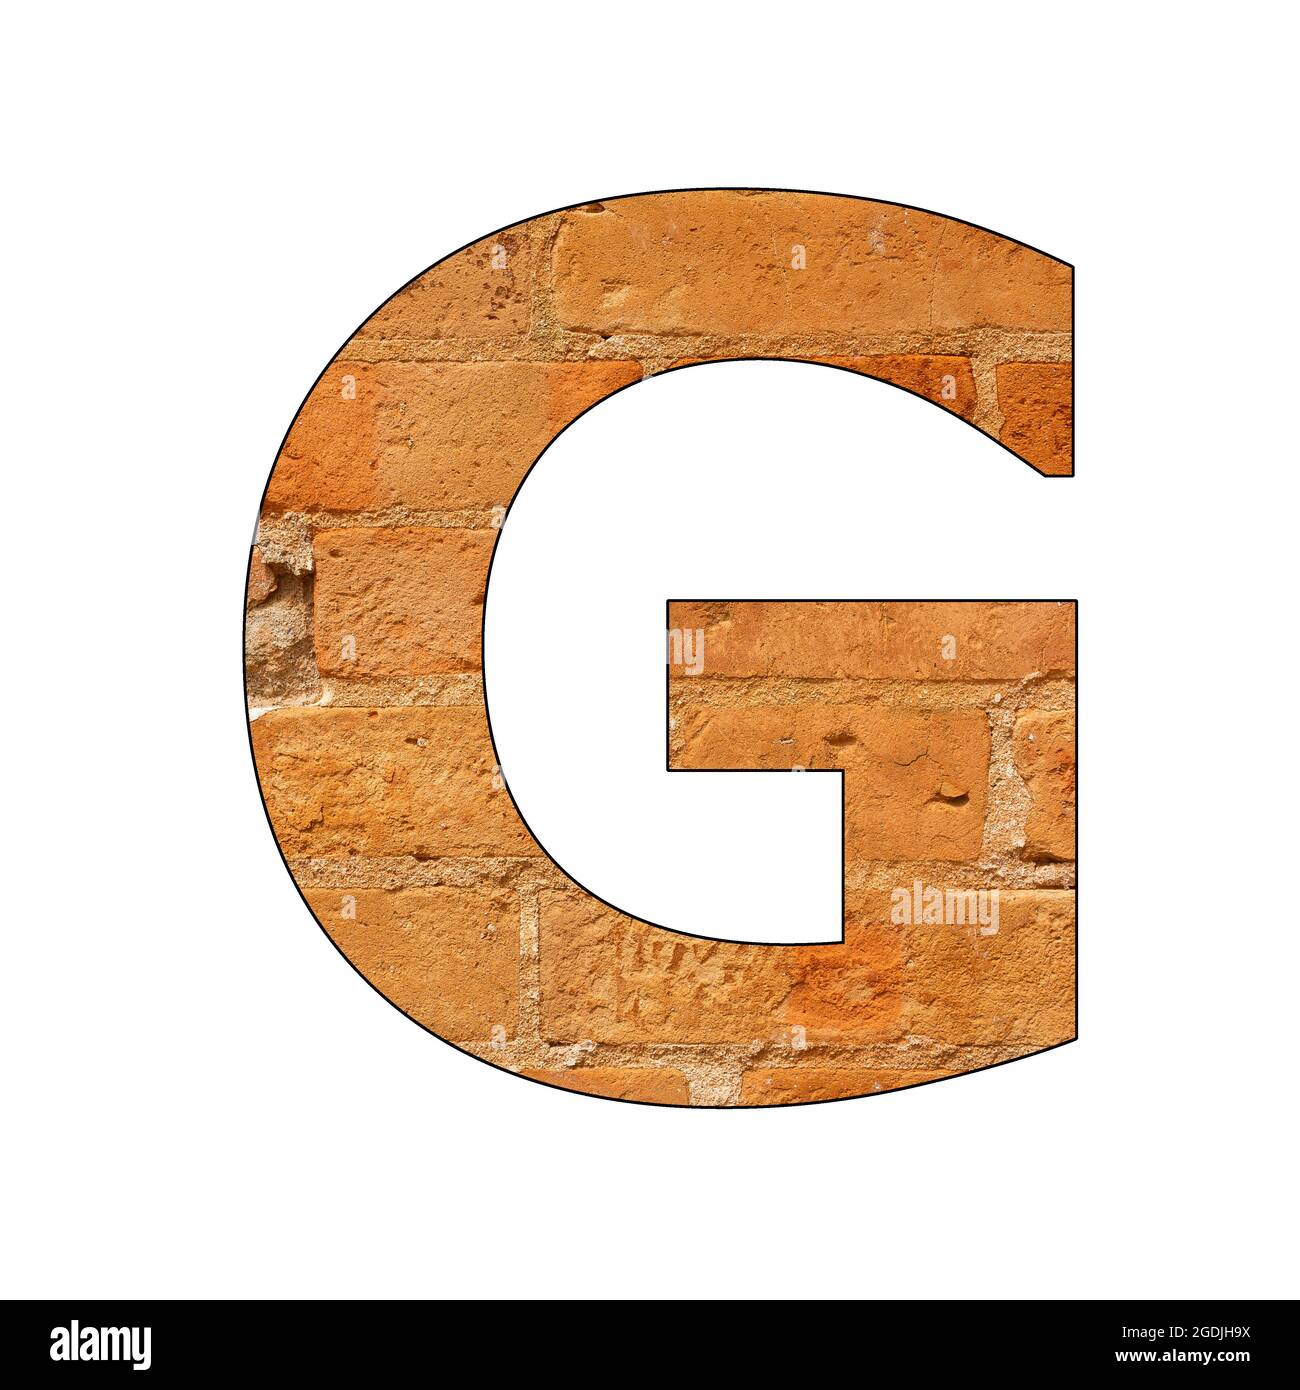 G, latin capital letter g